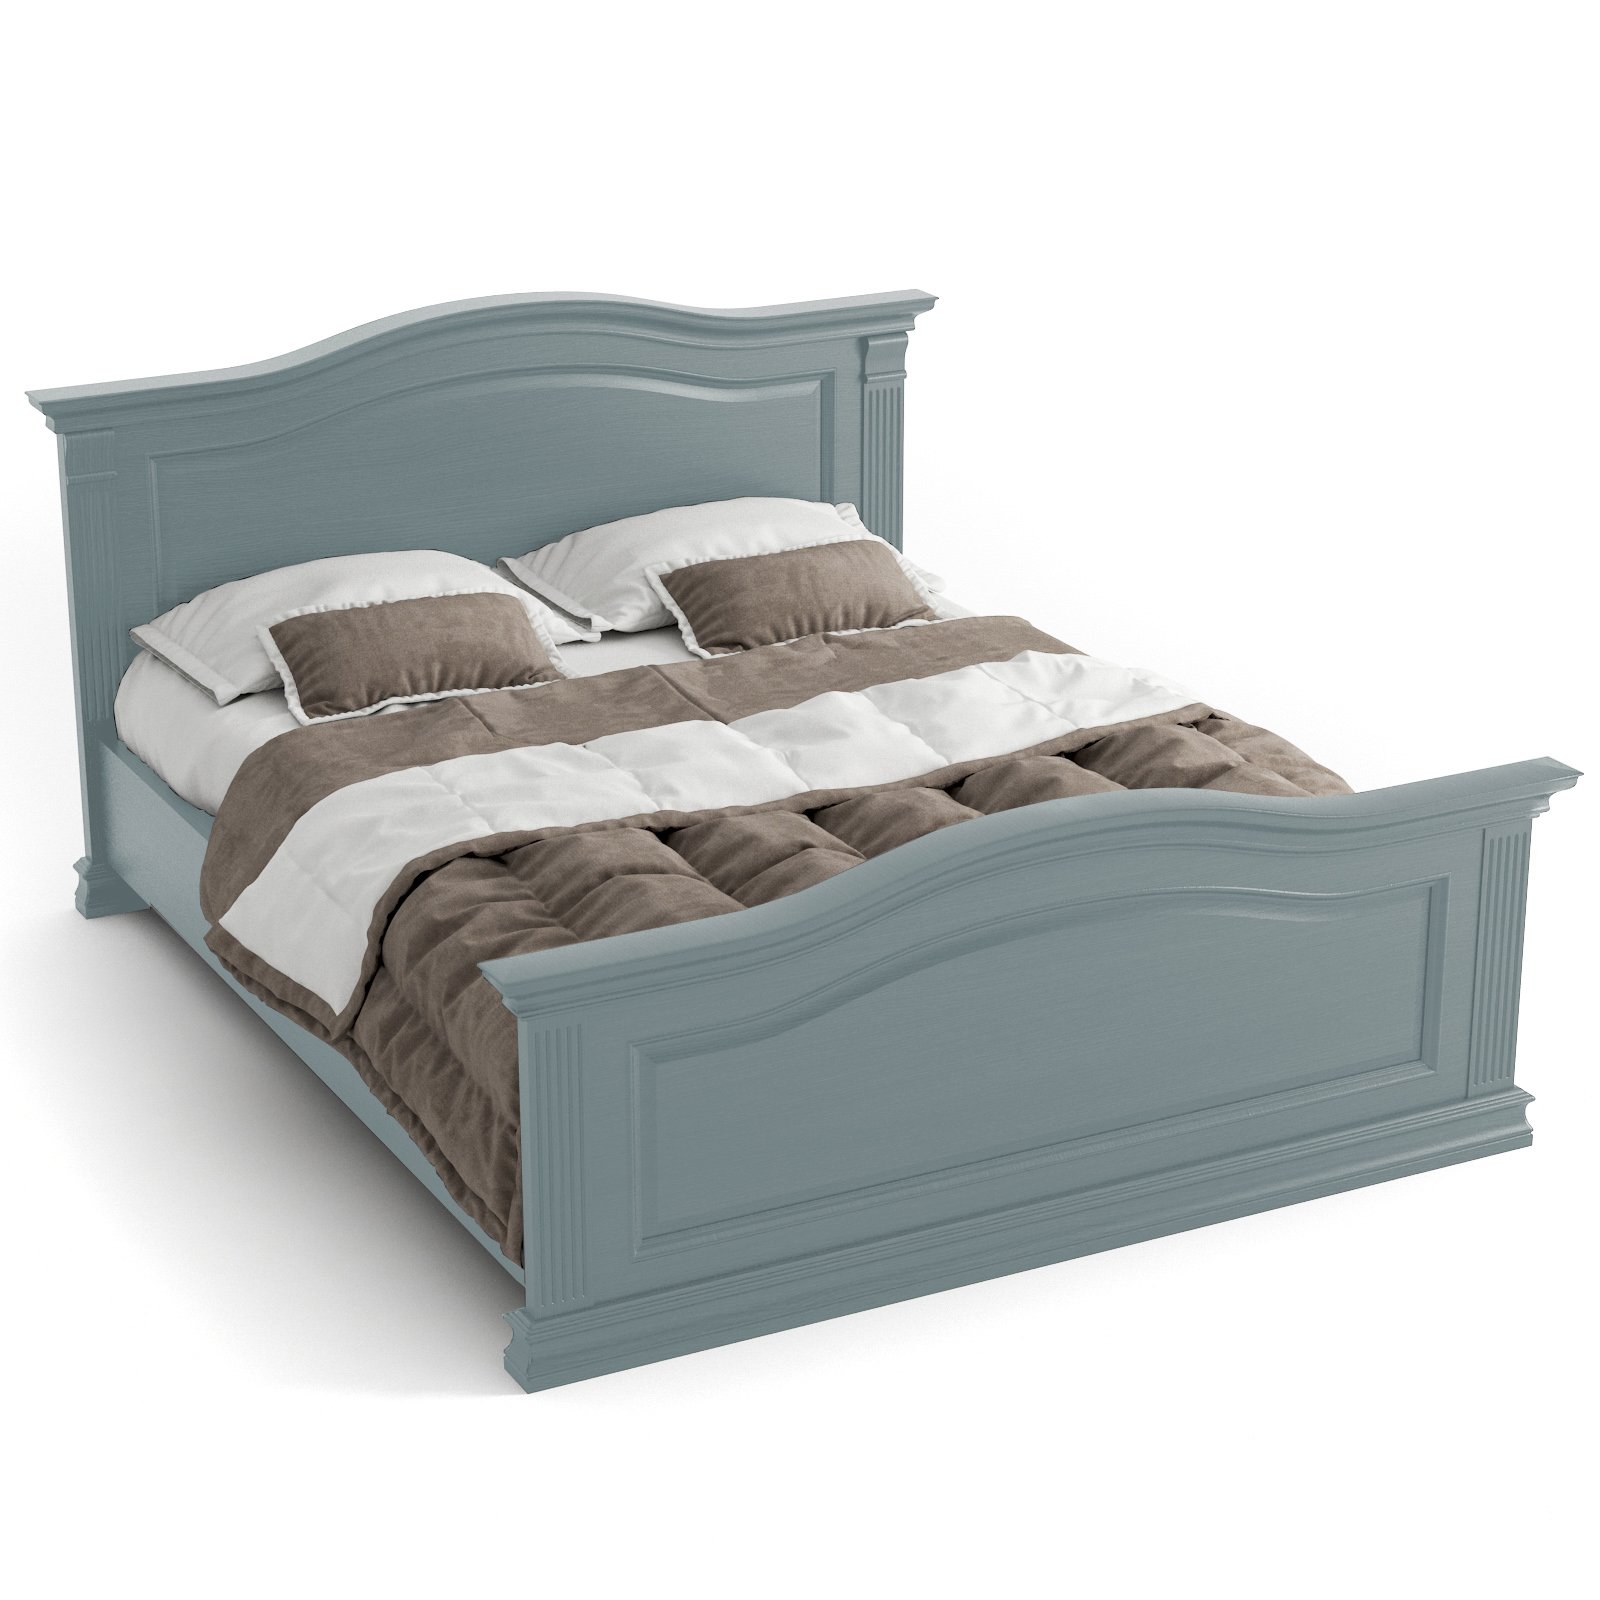 Кровать SDK Home Rimar, 140 / 160/ 180 x200, цвет лагуна RM.M21.164х21.U.L